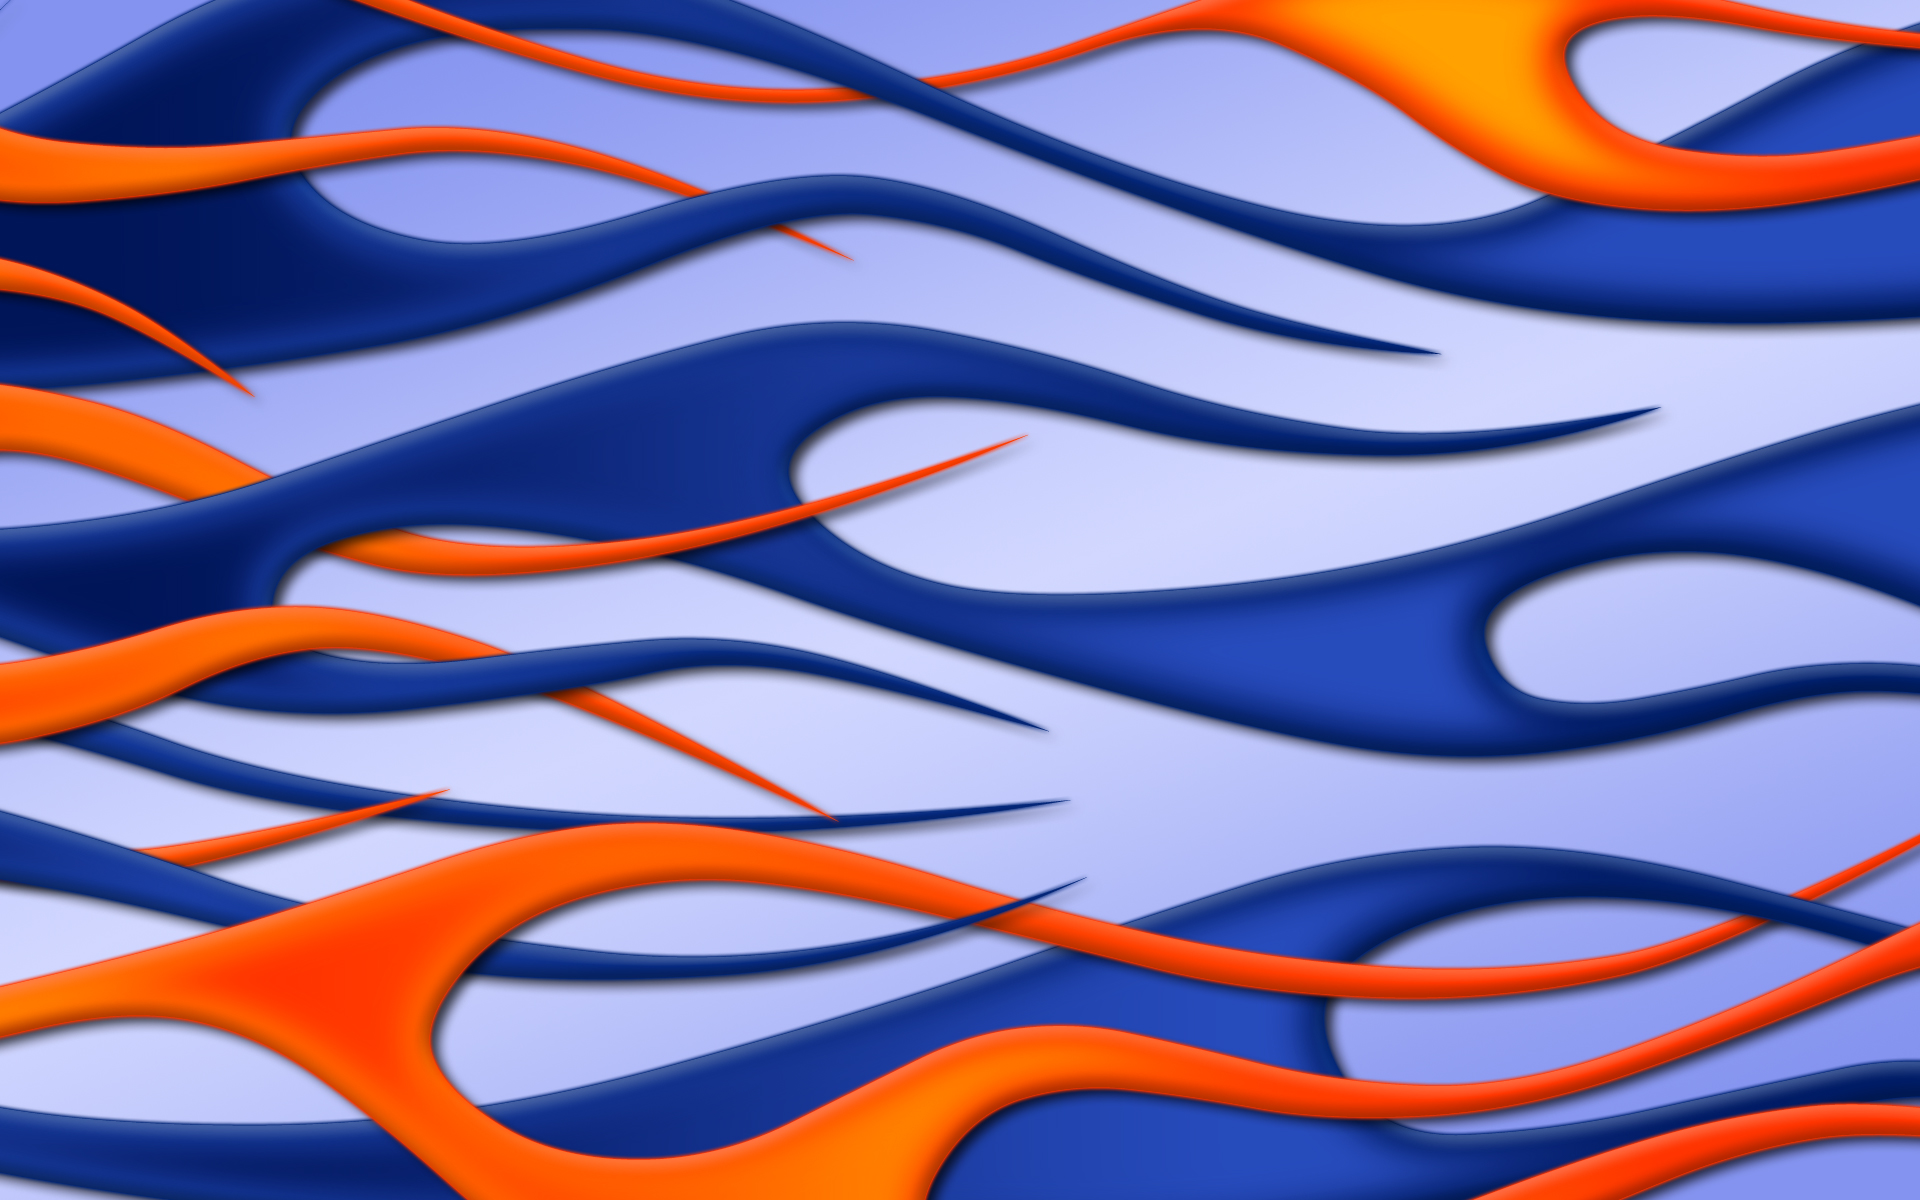 Flames Blue Wallpaper Image Jbensch Orange Widescreen